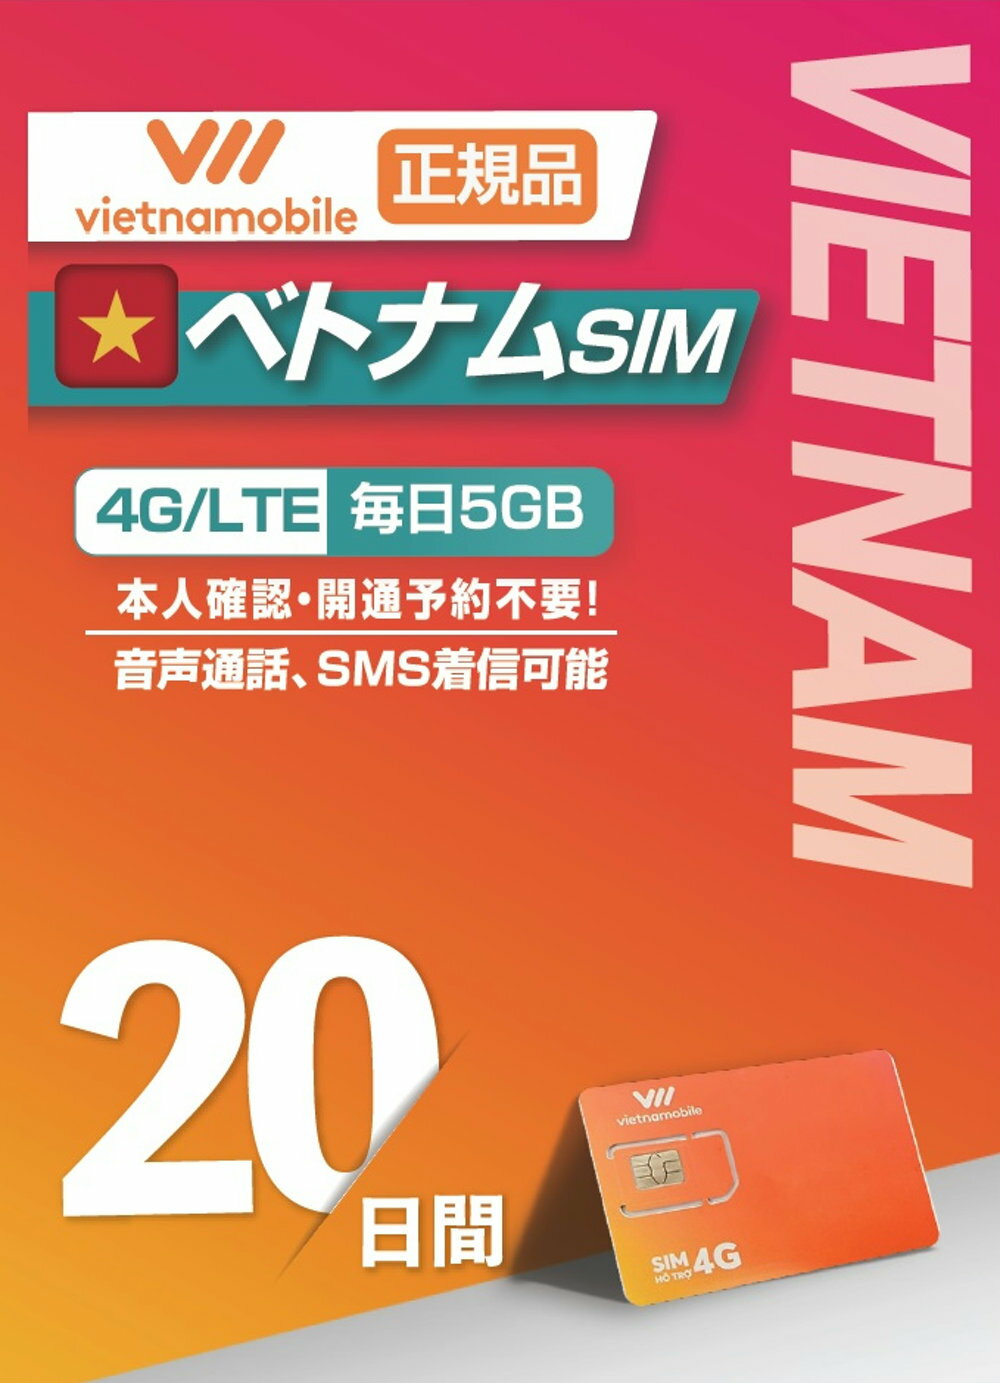 【WISE SIM】Vietnamobile ベトナムプリペイドSIM 利用期間20日 毎日5GB利用可能 4G 3G 接続 データ通信SIM(ベトナム現地の電話番号にて通話 SMSの着信のみ可能)